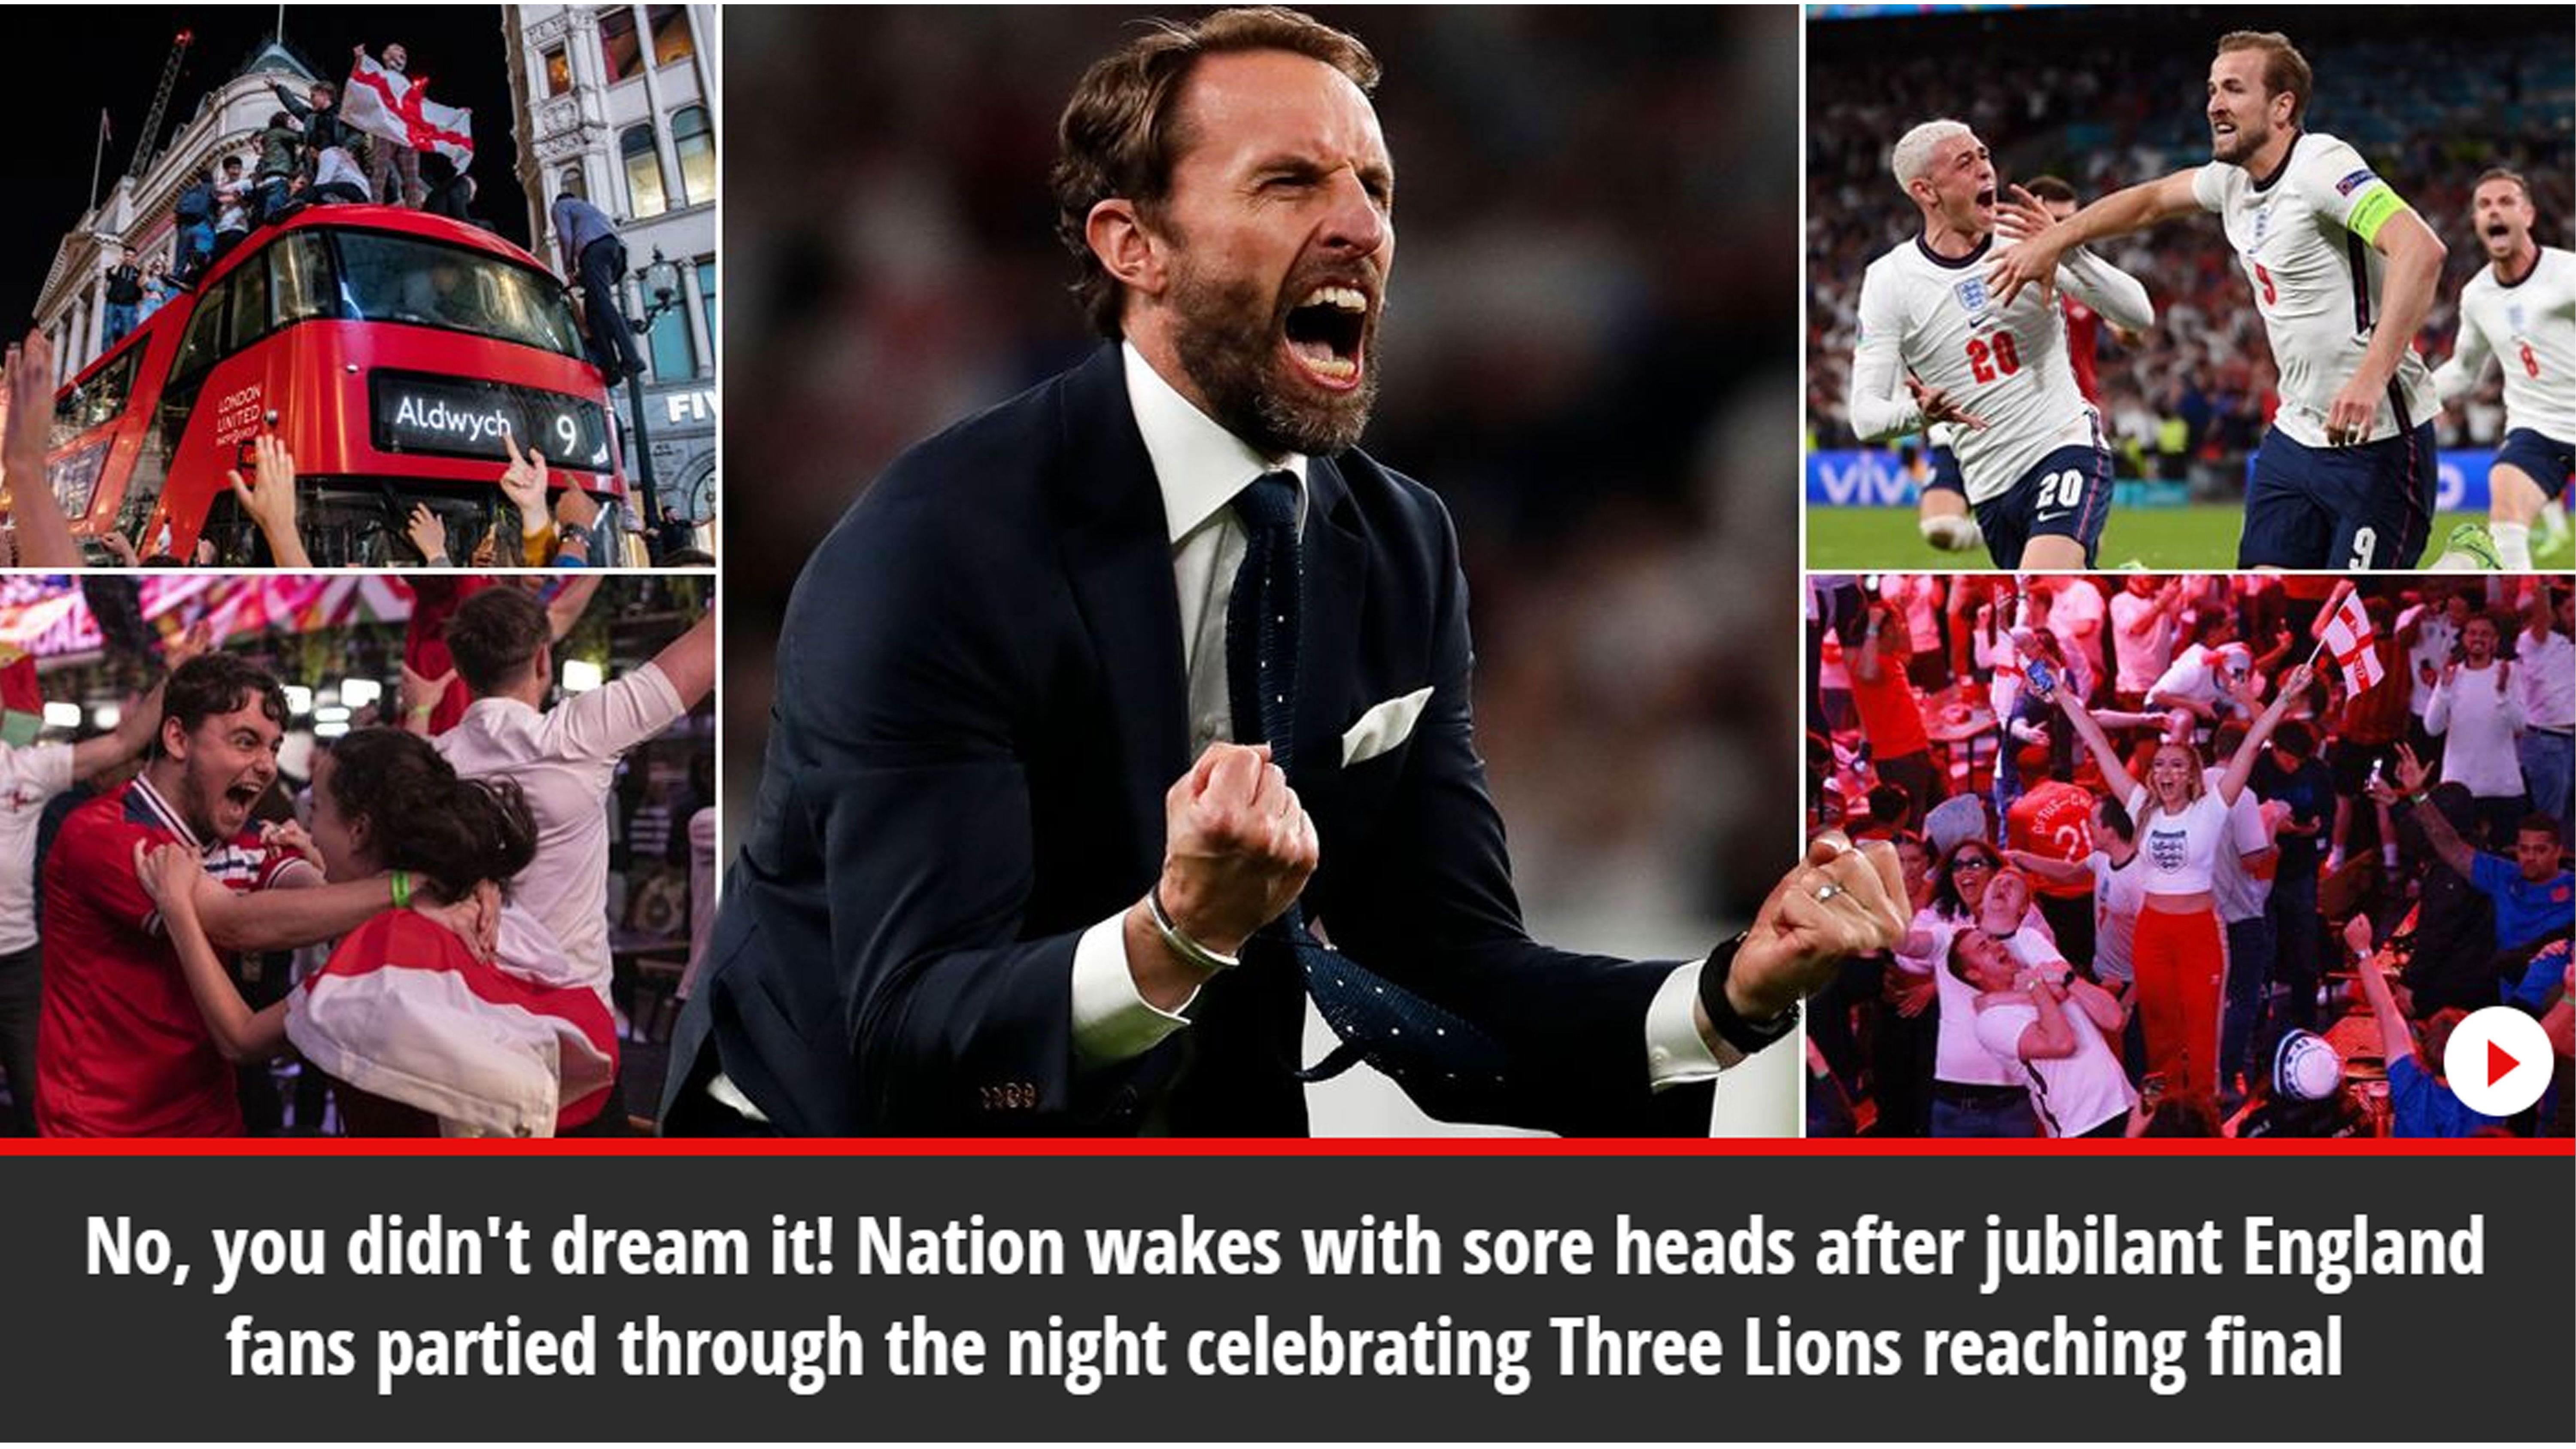 
                <strong>The Mirror: "Nein, ihr habt es nicht geträumt"</strong><br>
                Nun doch nicht geträumt? Eines steht fest: "Eine ganze Nation wacht mit Kopfschmerzen auf, nachdem Englands Fans, die ganze Nacht den Finaleinzug der Three Lions gefeiert haben".
              